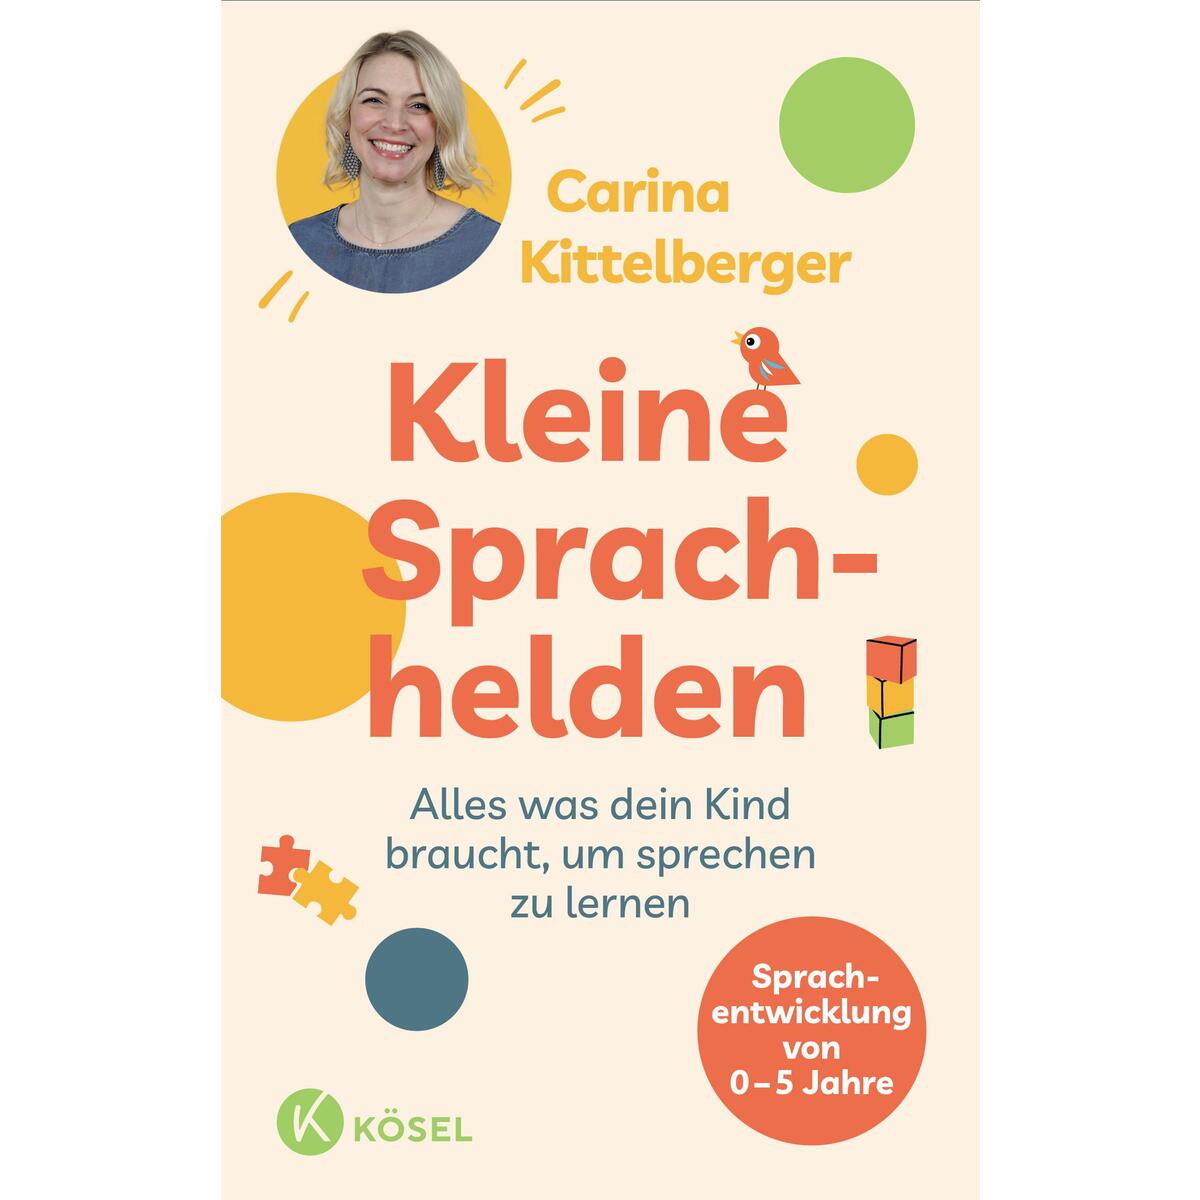 Kleine Sprachhelden von Kösel-Verlag